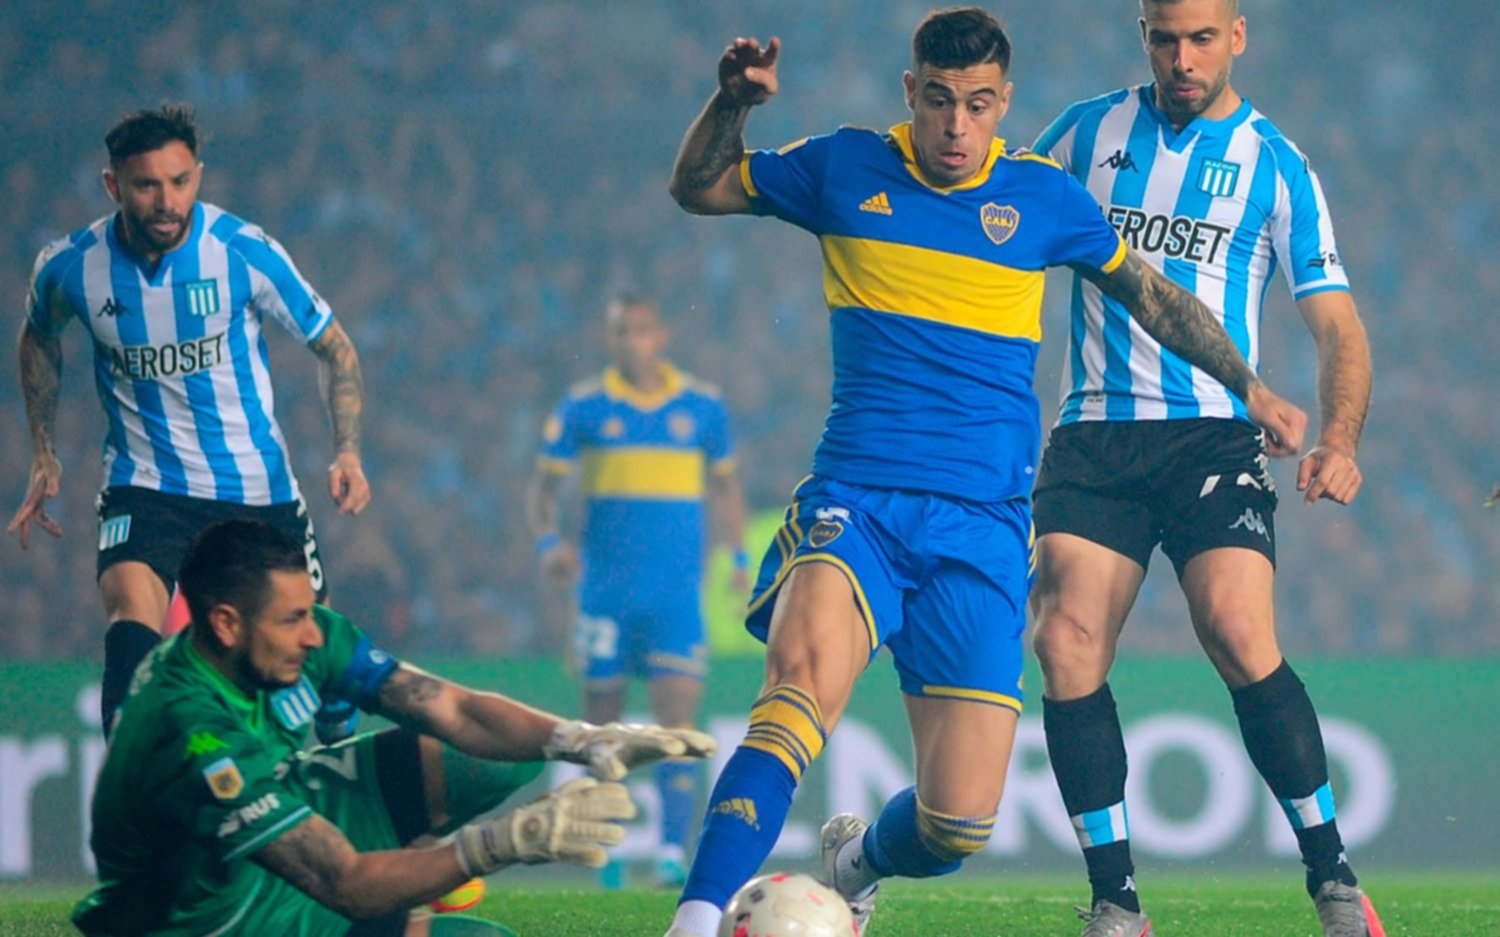 Con un final polémico, Racing y Boca igualaron sin goles en el Cilindro de Avellaneda